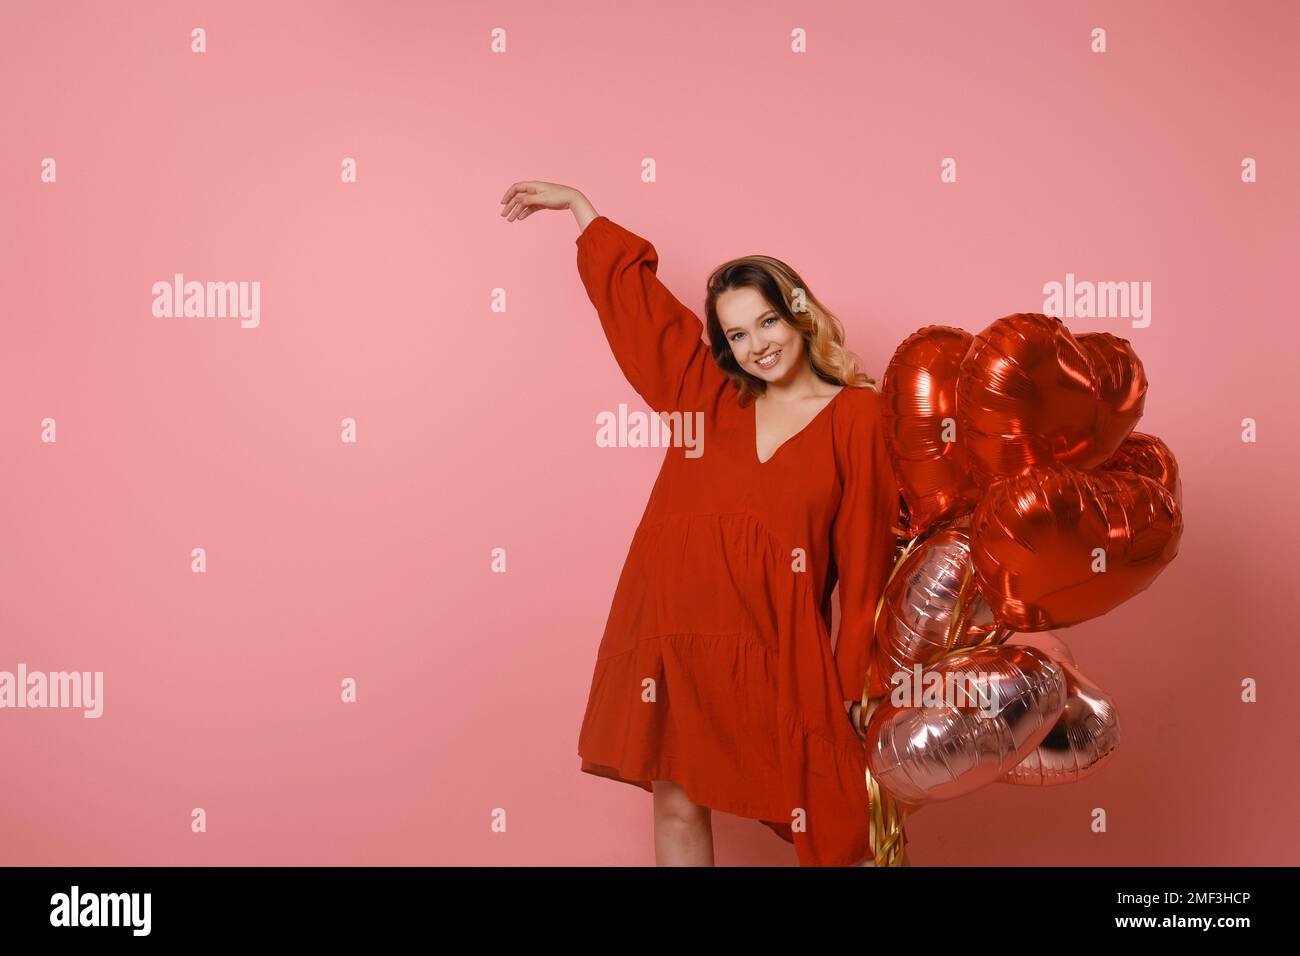 Hübsches Mädchen in einem roten Kleid auf pinkfarbenem Hintergrund, rote und pinkfarbene Herzballons. Fröhliches Model, das Spaß hat, feiert, Tänze spielt. Valentinstag Stockfoto